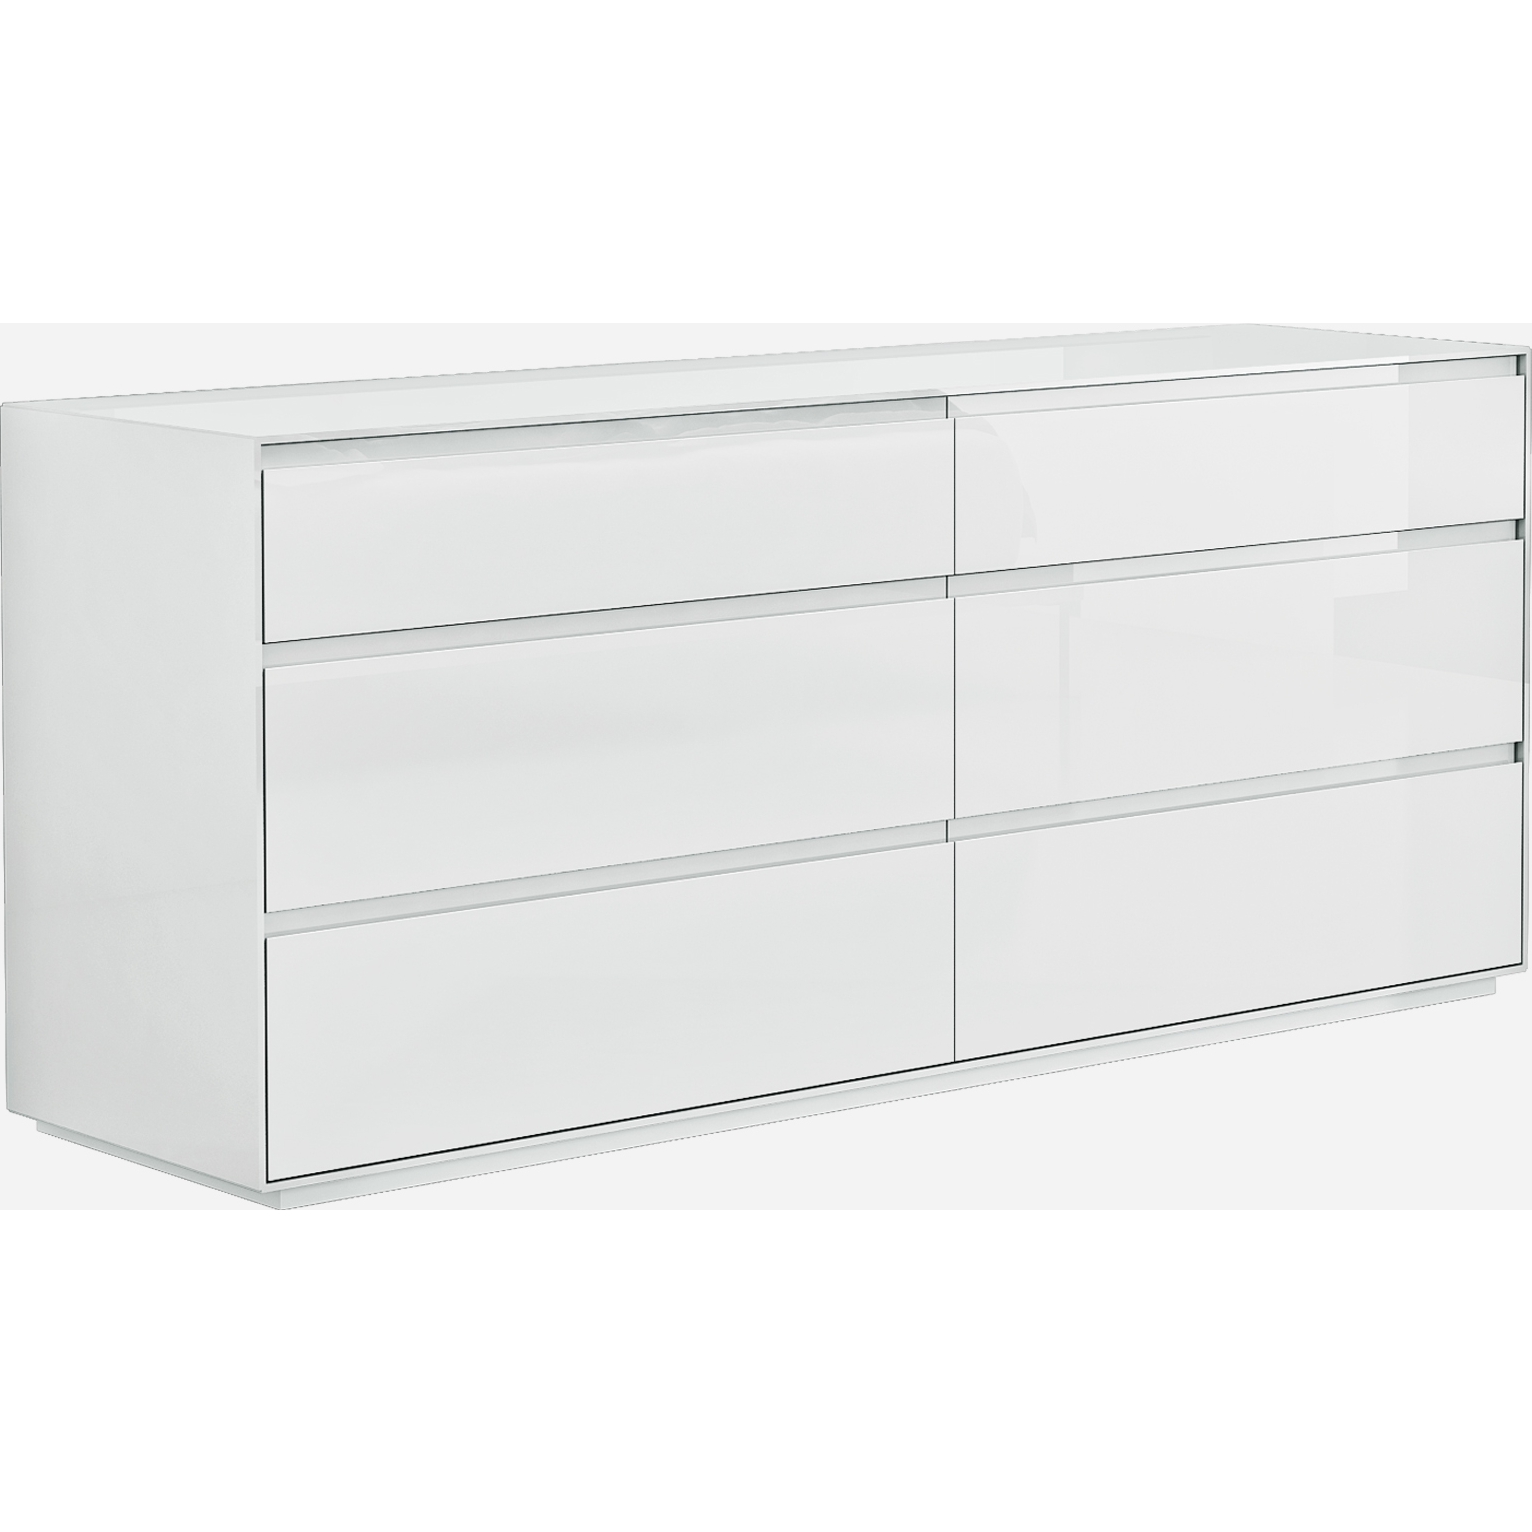 Whiteline Dr1367 Wht Malibu 6 Drawer Dresser In High Gloss White